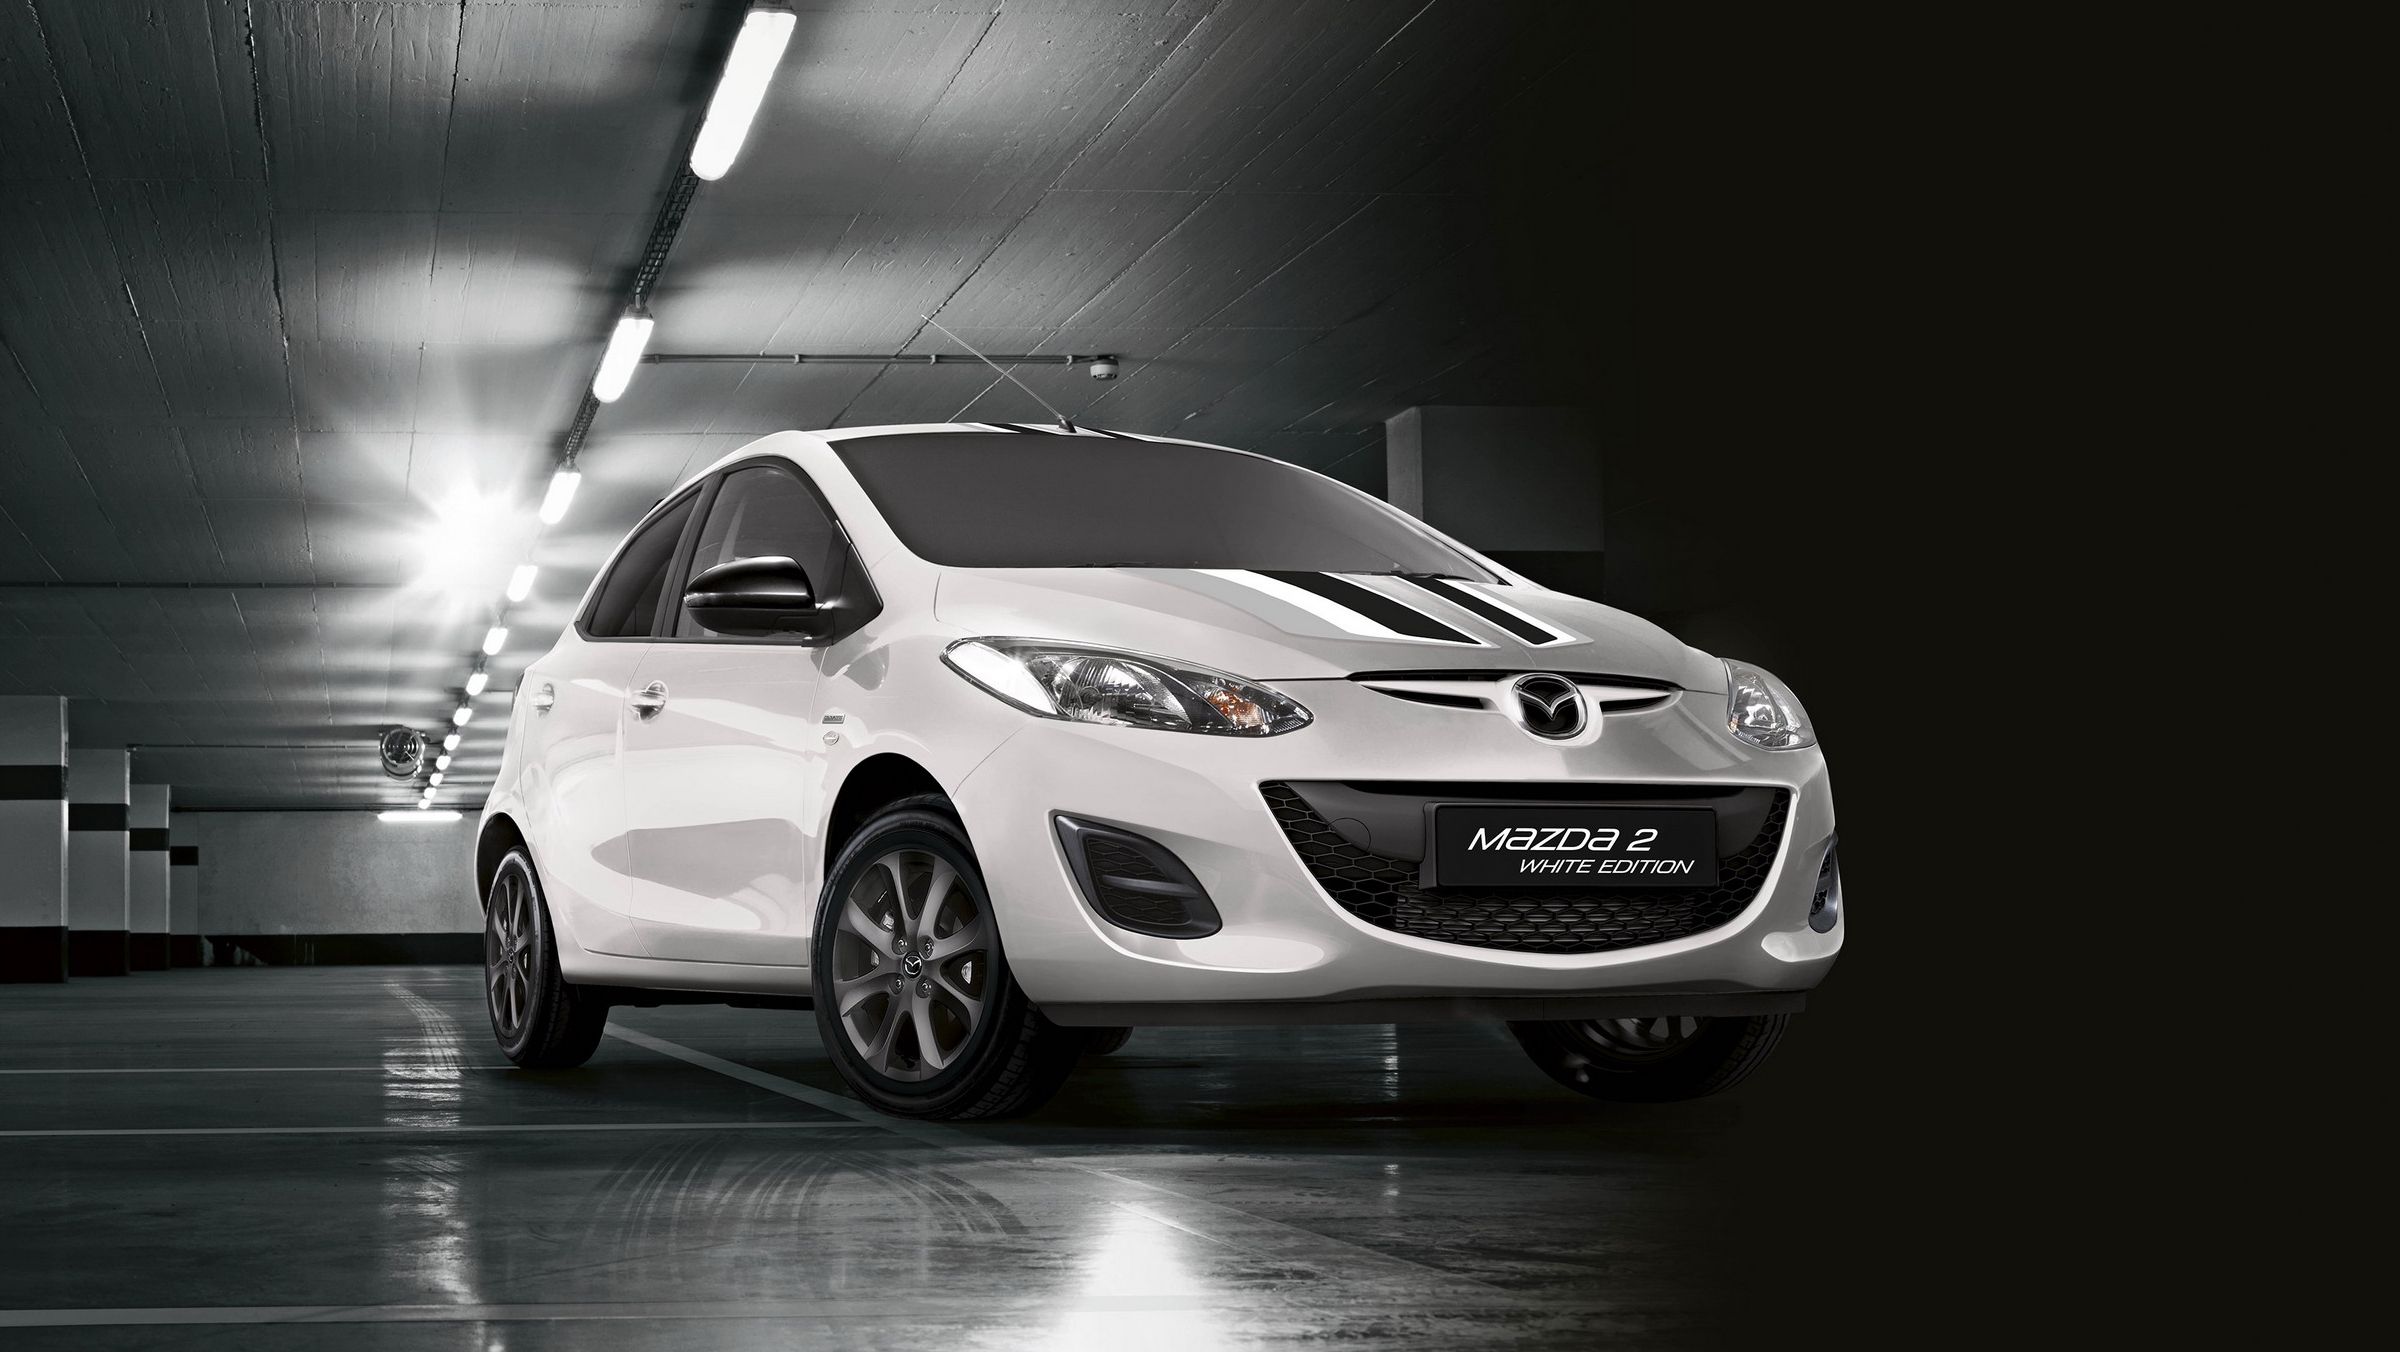 2015 Mazda2 Black And White Edition